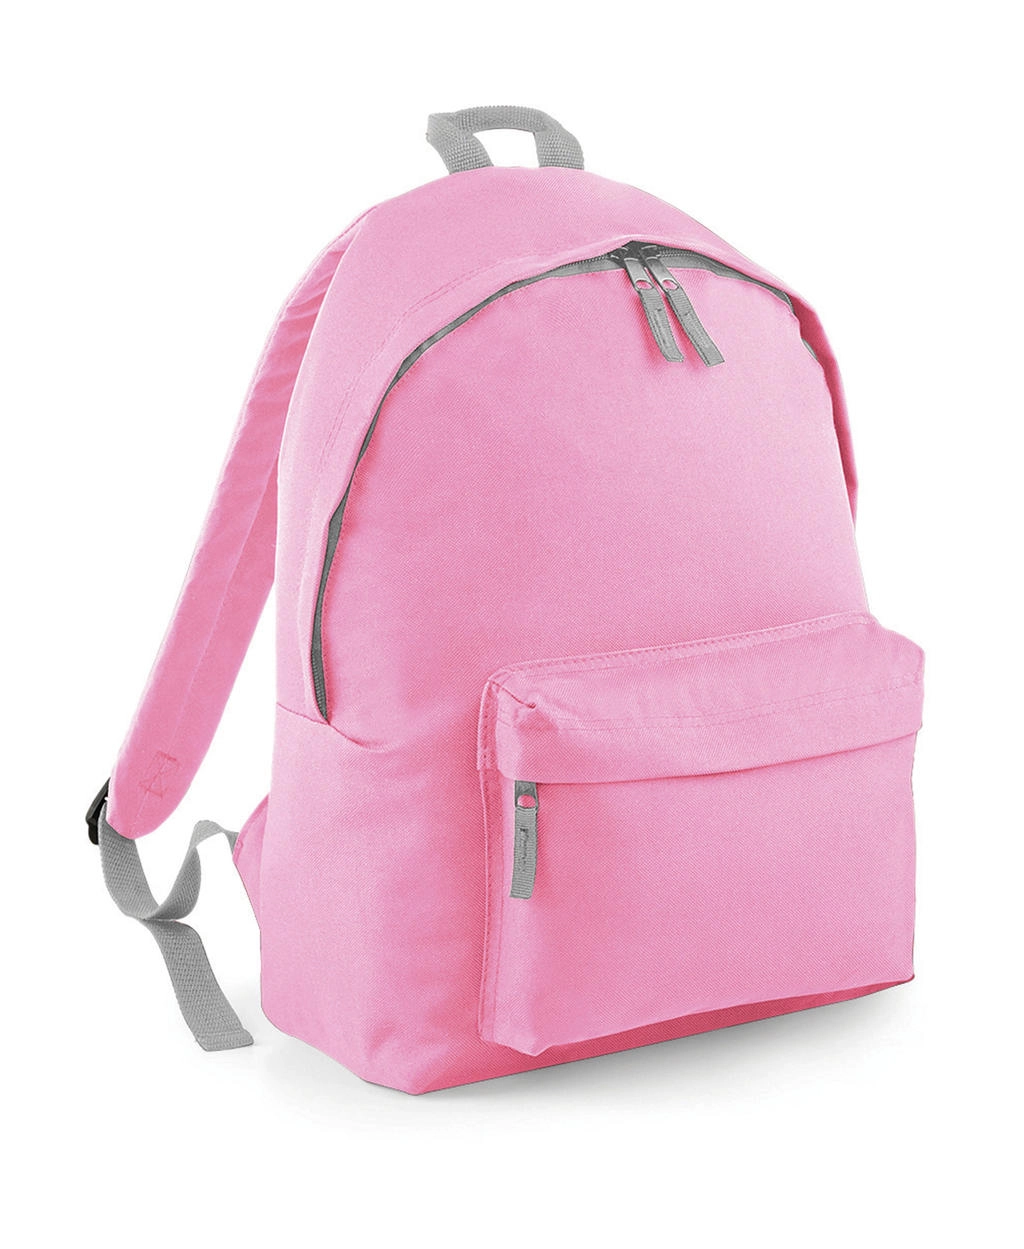 Junior Fashion Backpack zum Besticken und Bedrucken in der Farbe Classic Pink/Light Grey mit Ihren Logo, Schriftzug oder Motiv.